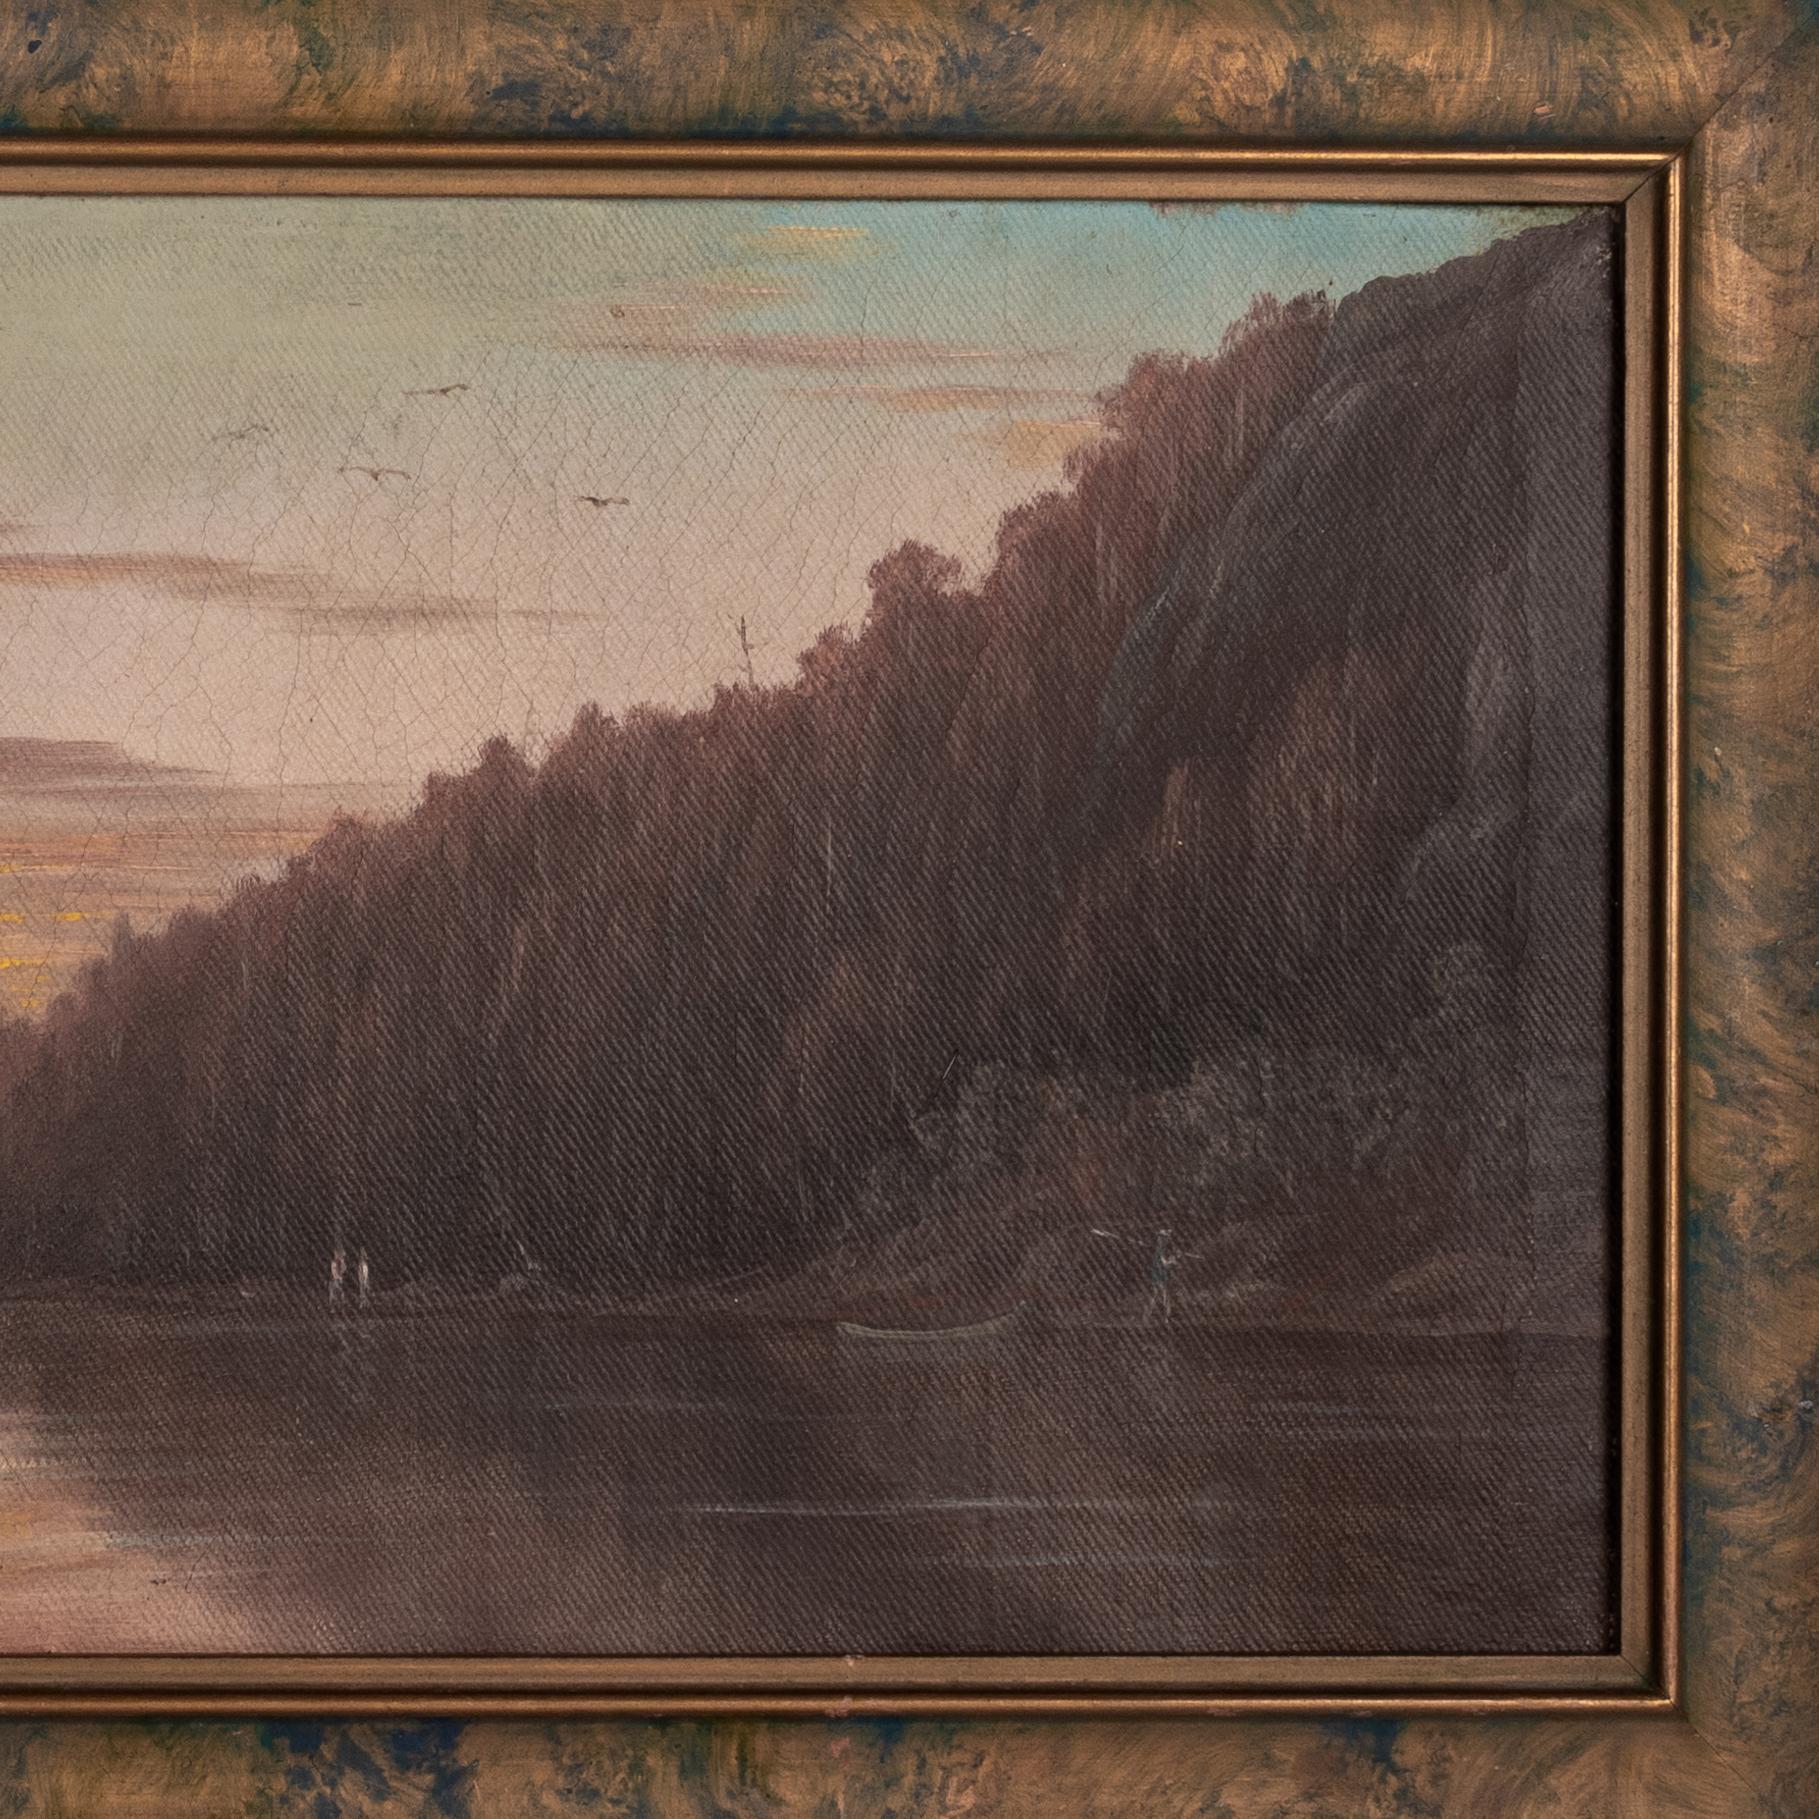 Ein gutes realistisches Gemälde von Albert Horatio Slade (1843-1922) aus dem späten 19. Jahrhundert in Öl auf Leinwand mit kalifornischer Flusslandschaft, um 1888.
Das Gemälde zeigt einen Fluss durch eine bergige, bewaldete Flusslandschaft, am Ufer